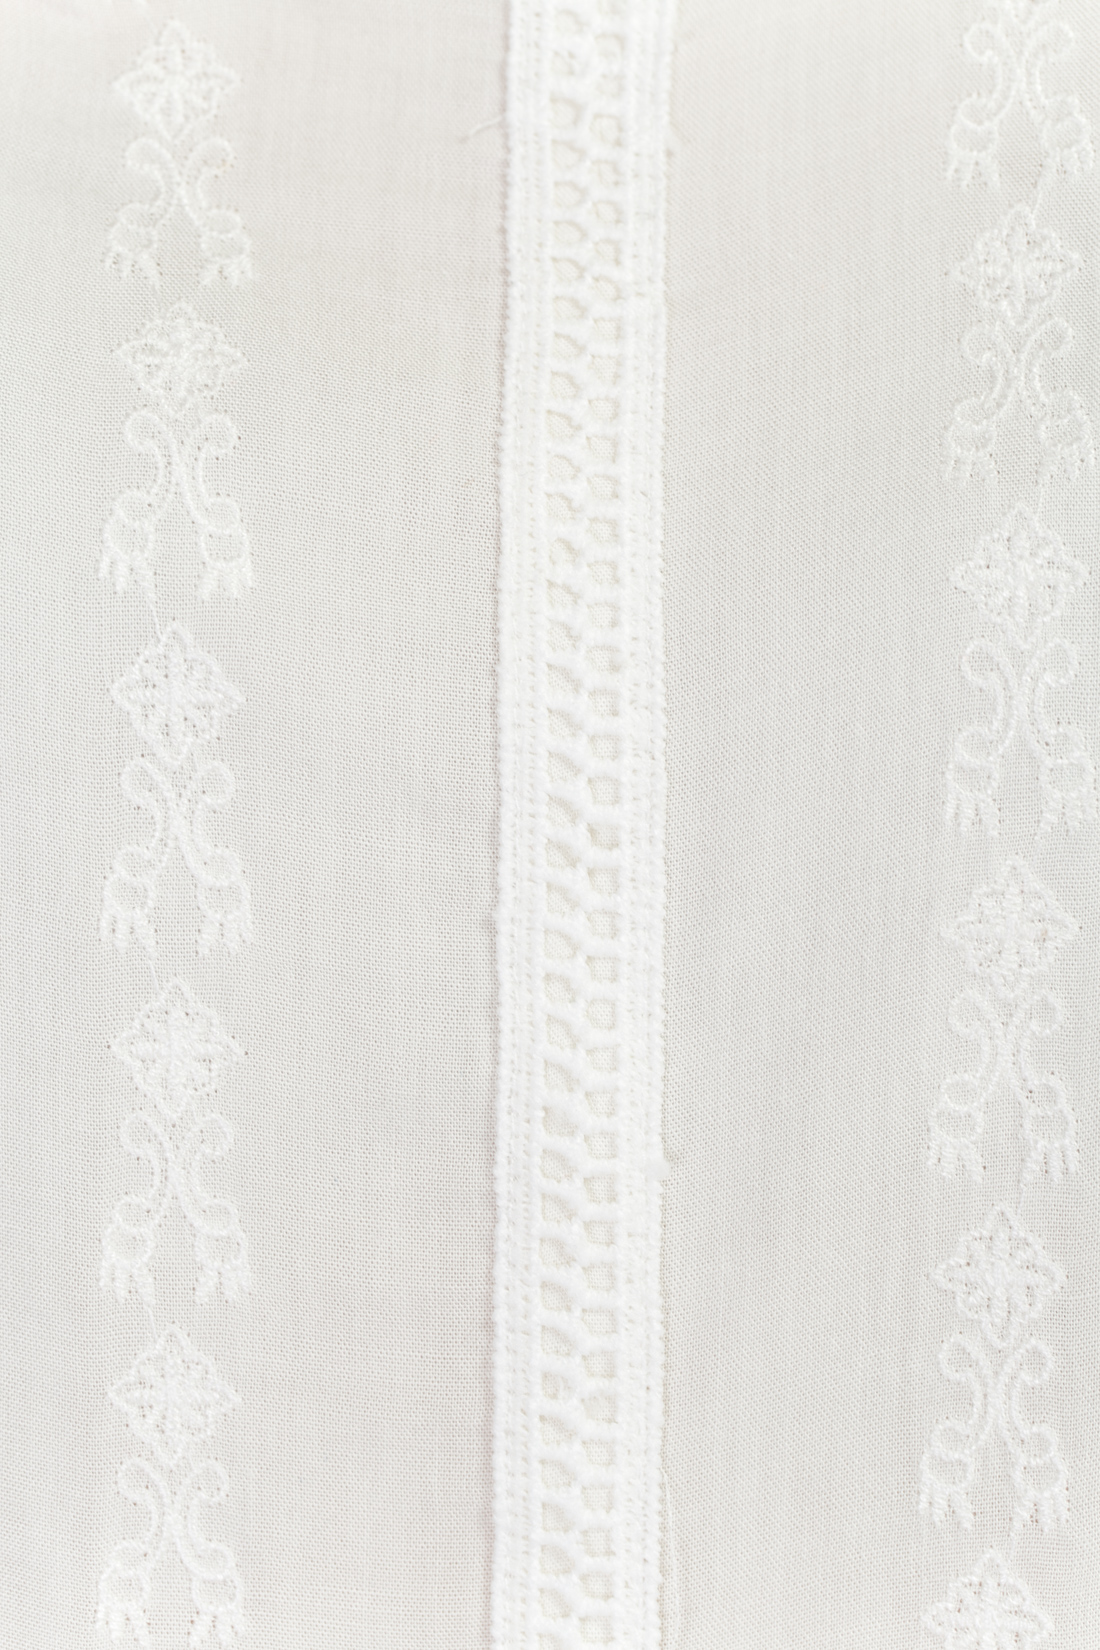 Блузка с вышивкой в крестьянском стиле (арт. baon B197054), размер XXL, цвет белый Блузка с вышивкой в крестьянском стиле (арт. baon B197054) - фото 4